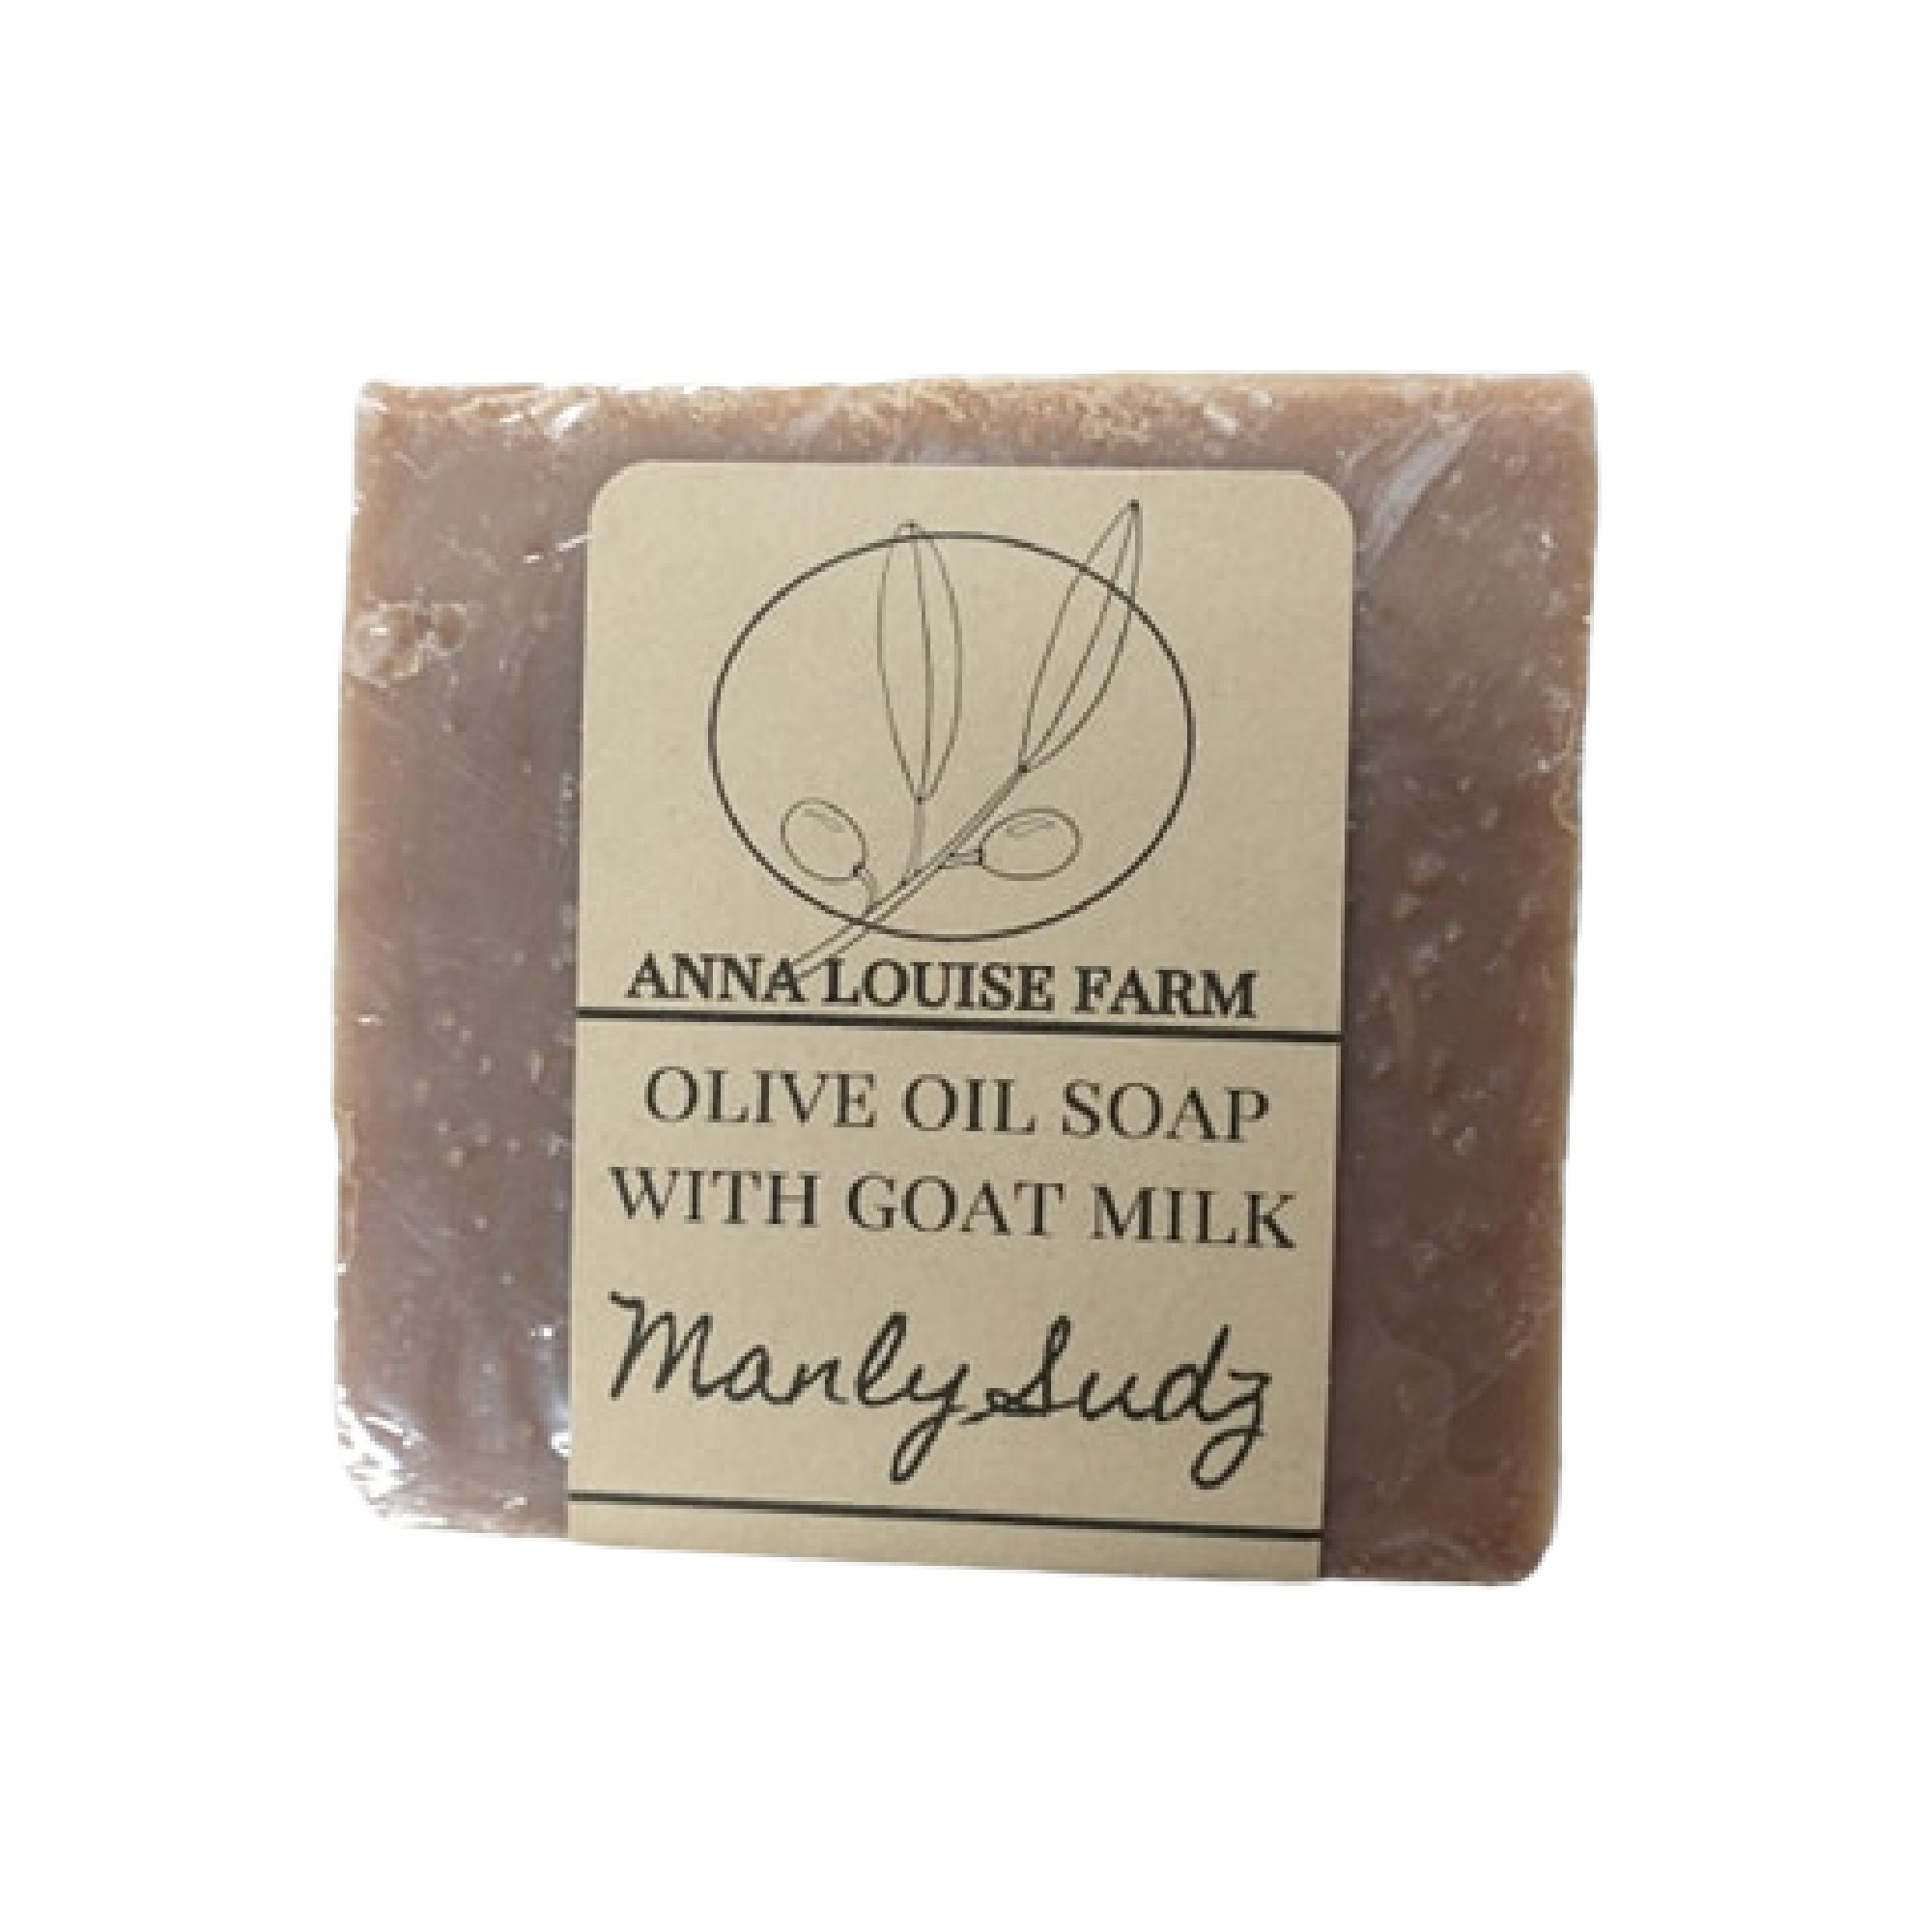 Plain Jane Unscented Goat Milk Soap